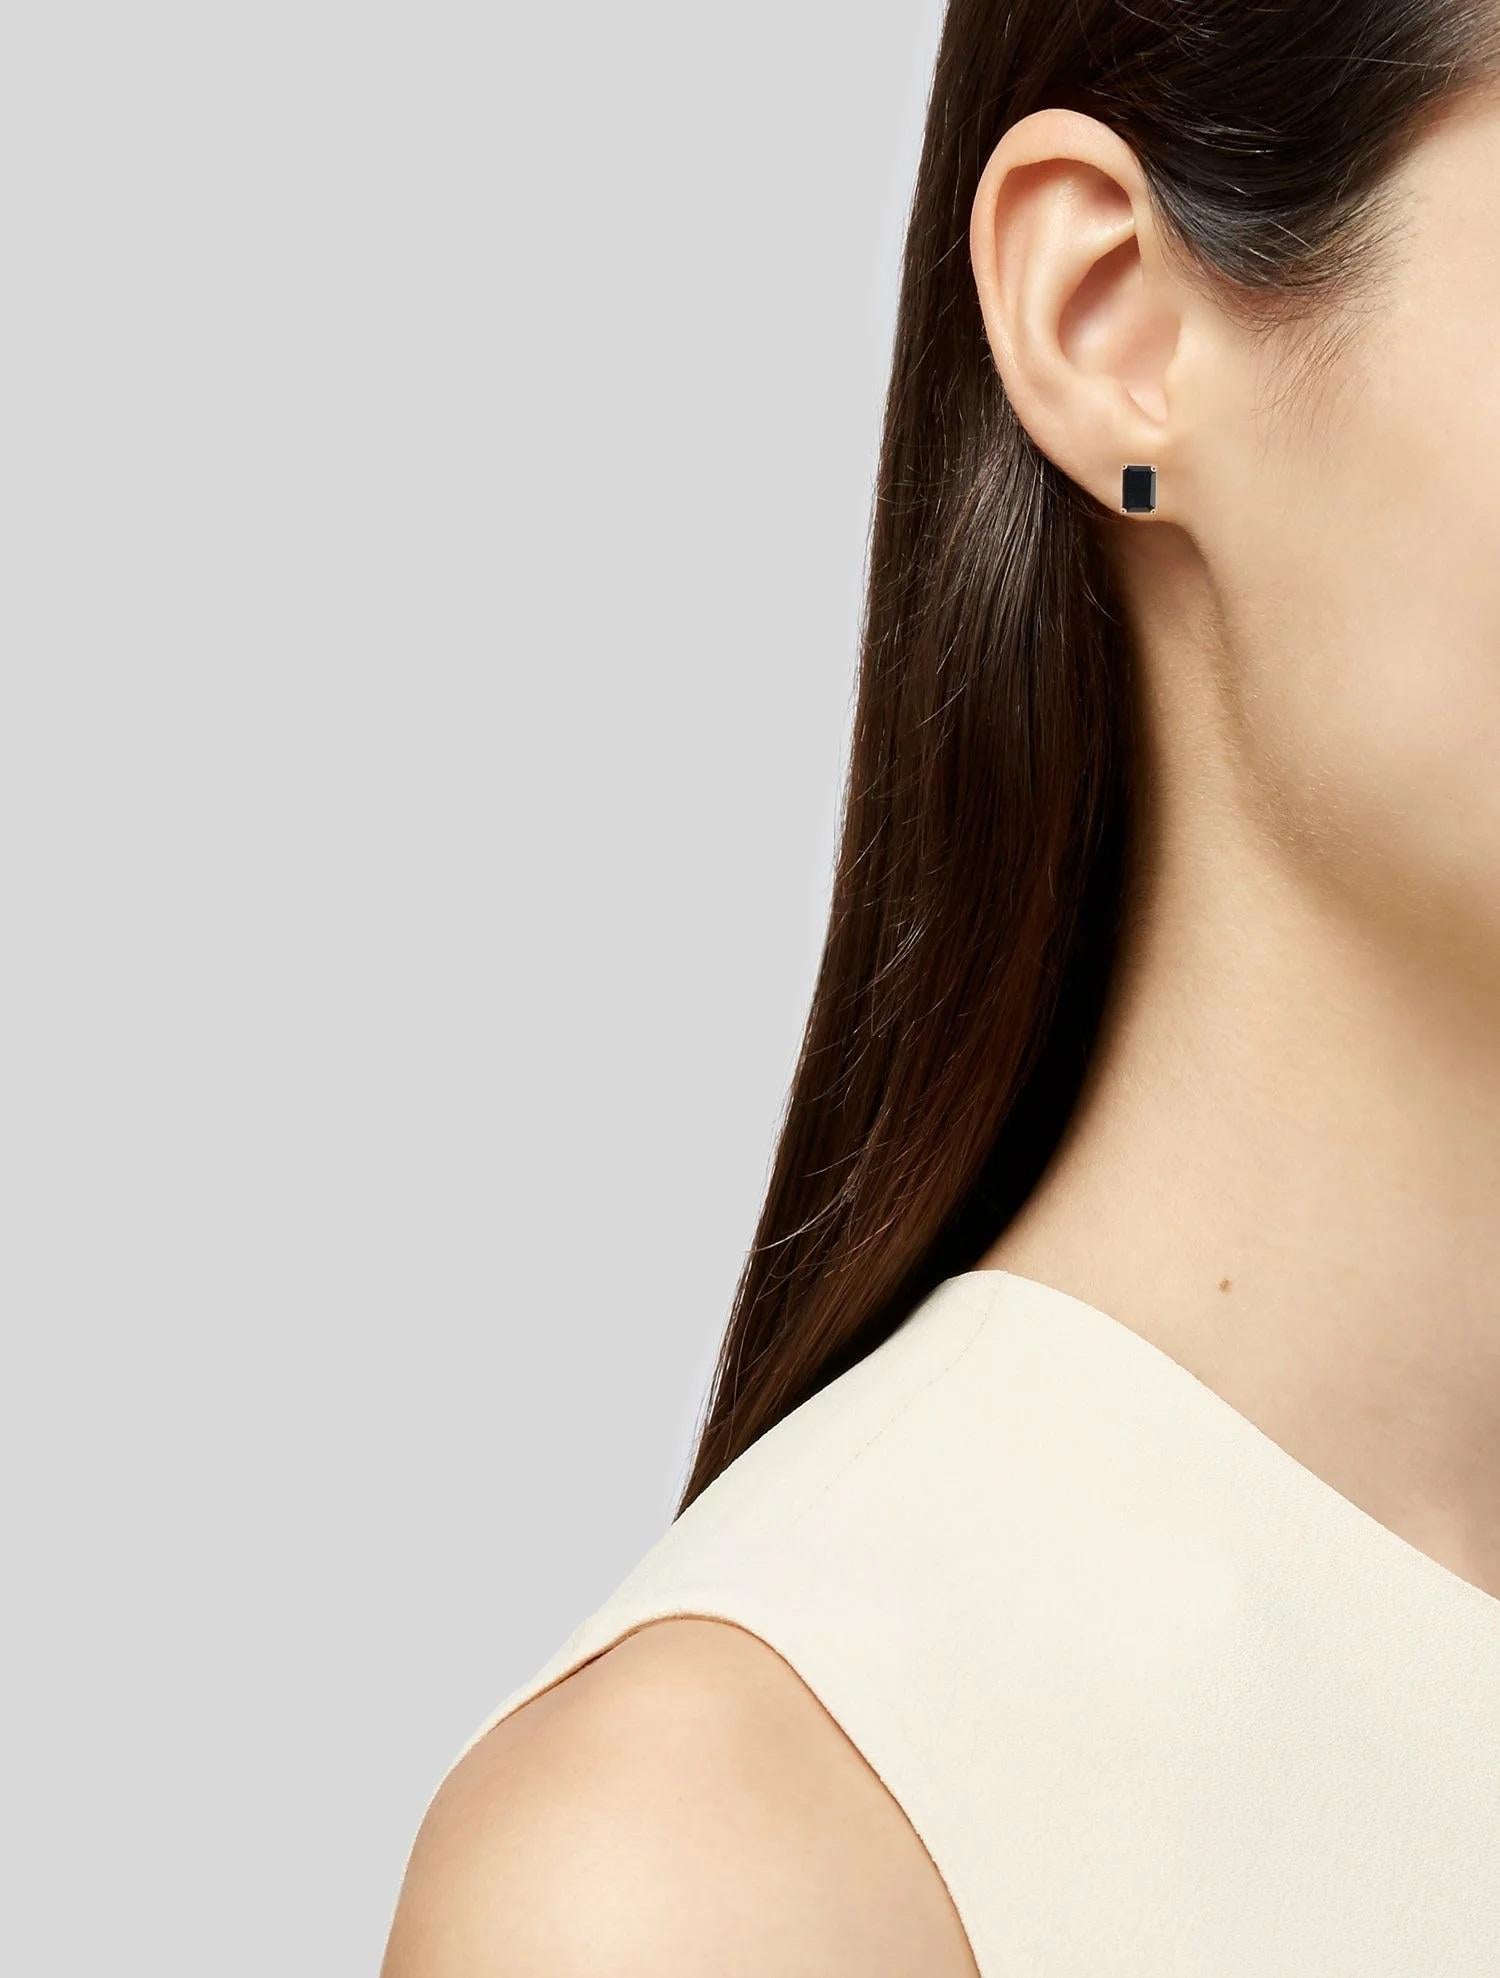 Erhöhen Sie Ihren Stil mit diesen exquisiten Saphir-Ohrsteckern aus 14 Karat Gelbgold. Jeder Ohrring besteht aus zwei bezaubernden blauen Saphiren im eleganten Smaragdschliff. Die Steine weisen einen subtilen Hauch von gräulicher Sättigung auf, was